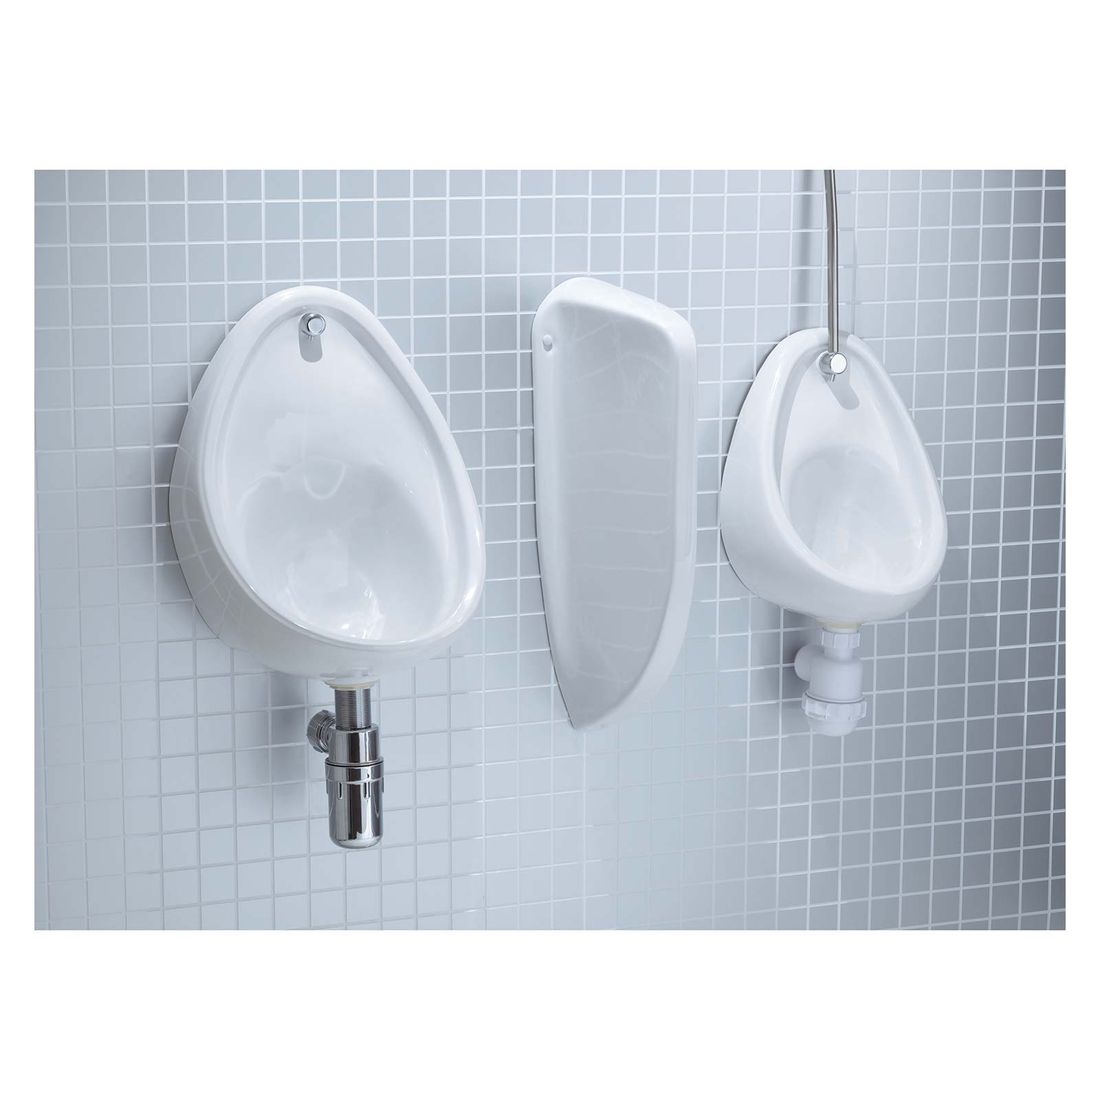 Atlas Pro Exposed Urinal Bowl 40Cm White